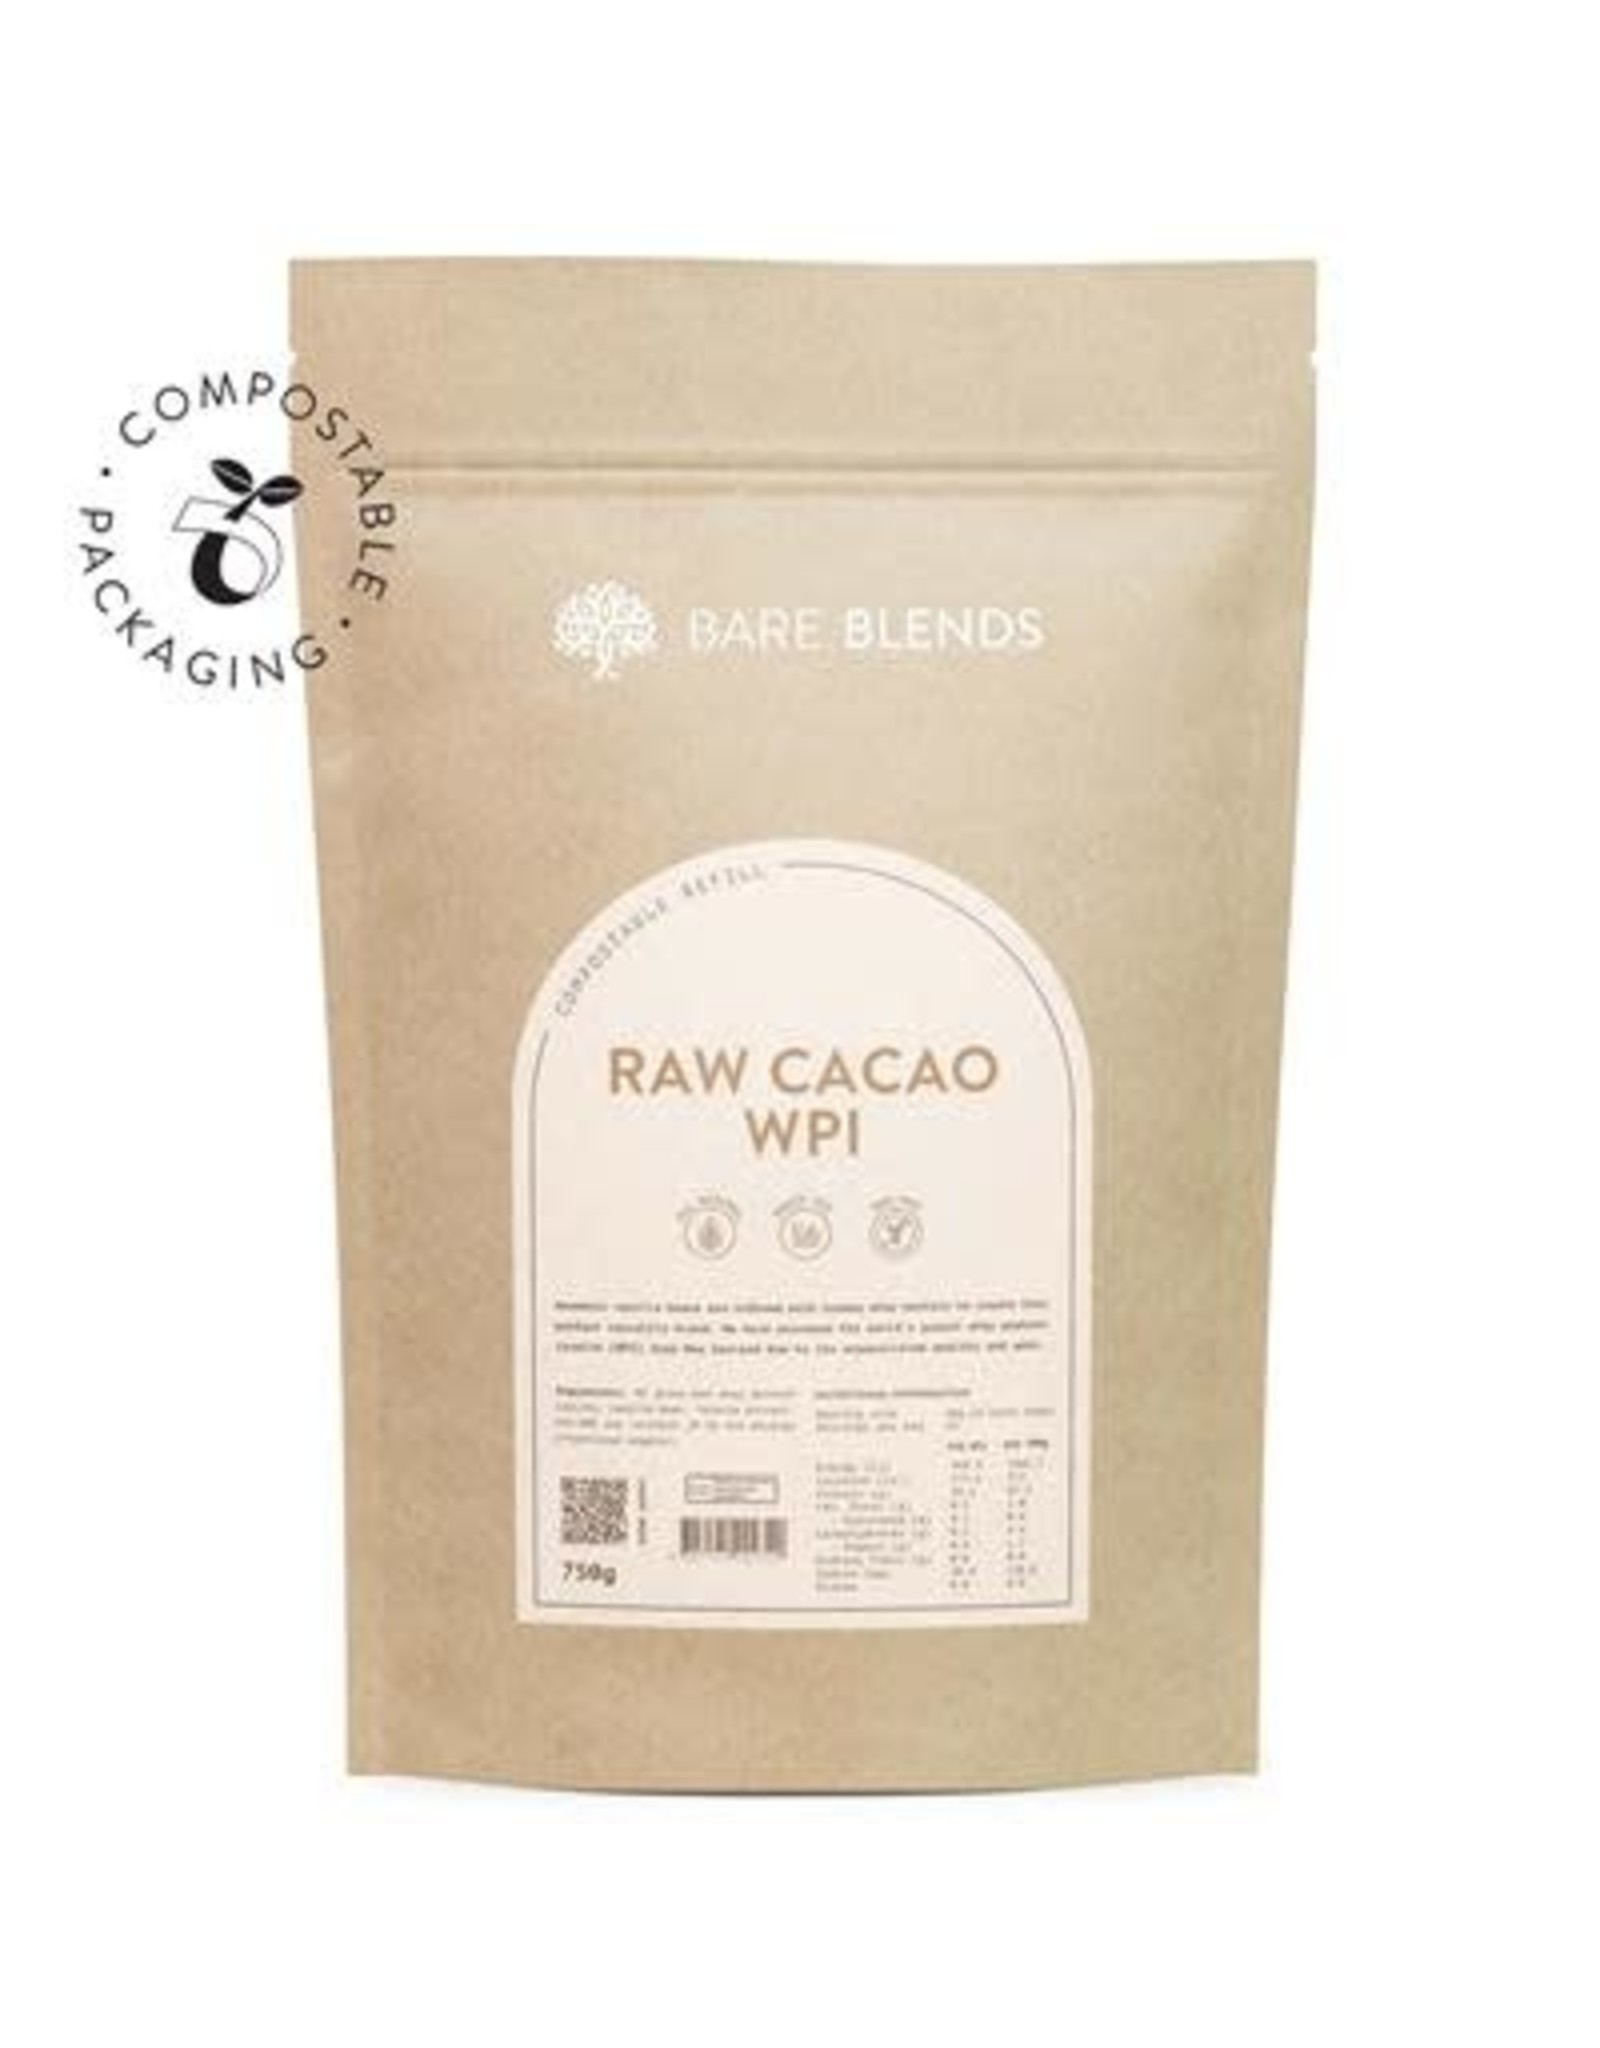 Bare Blends Raw Cacao WPI